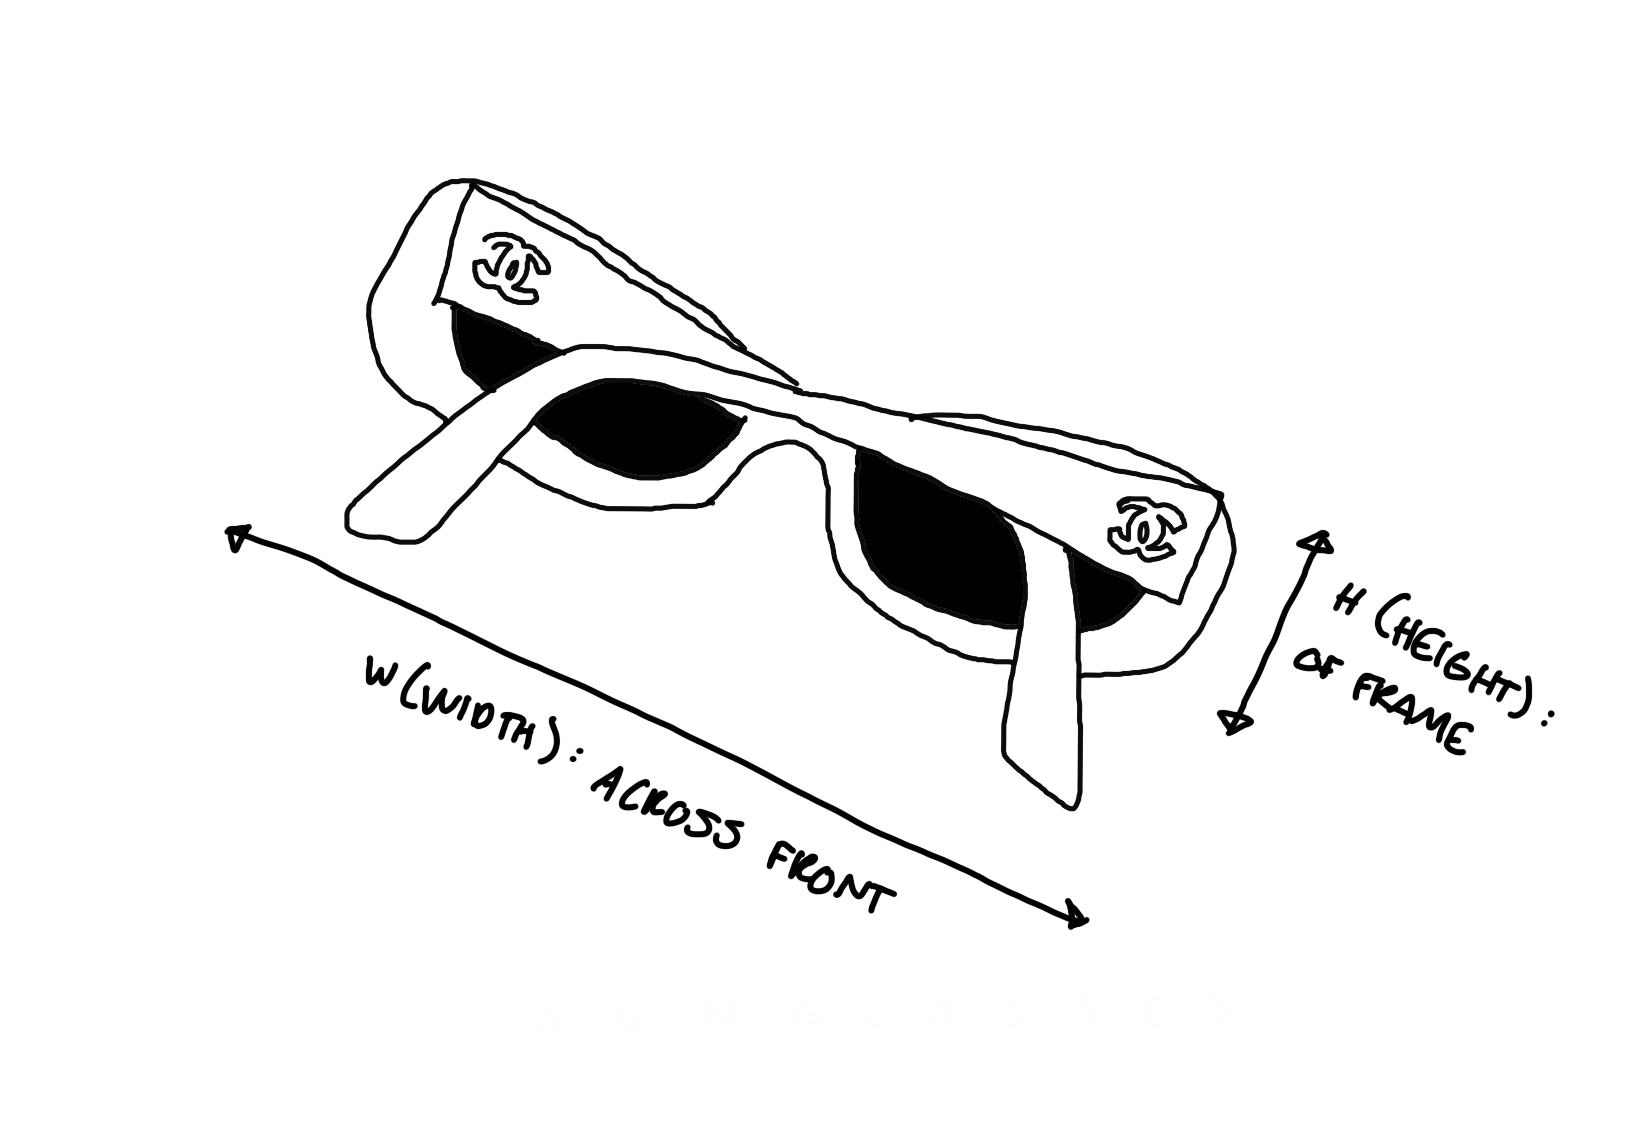 Chanel Black All Over Logo Micro Sunglasses